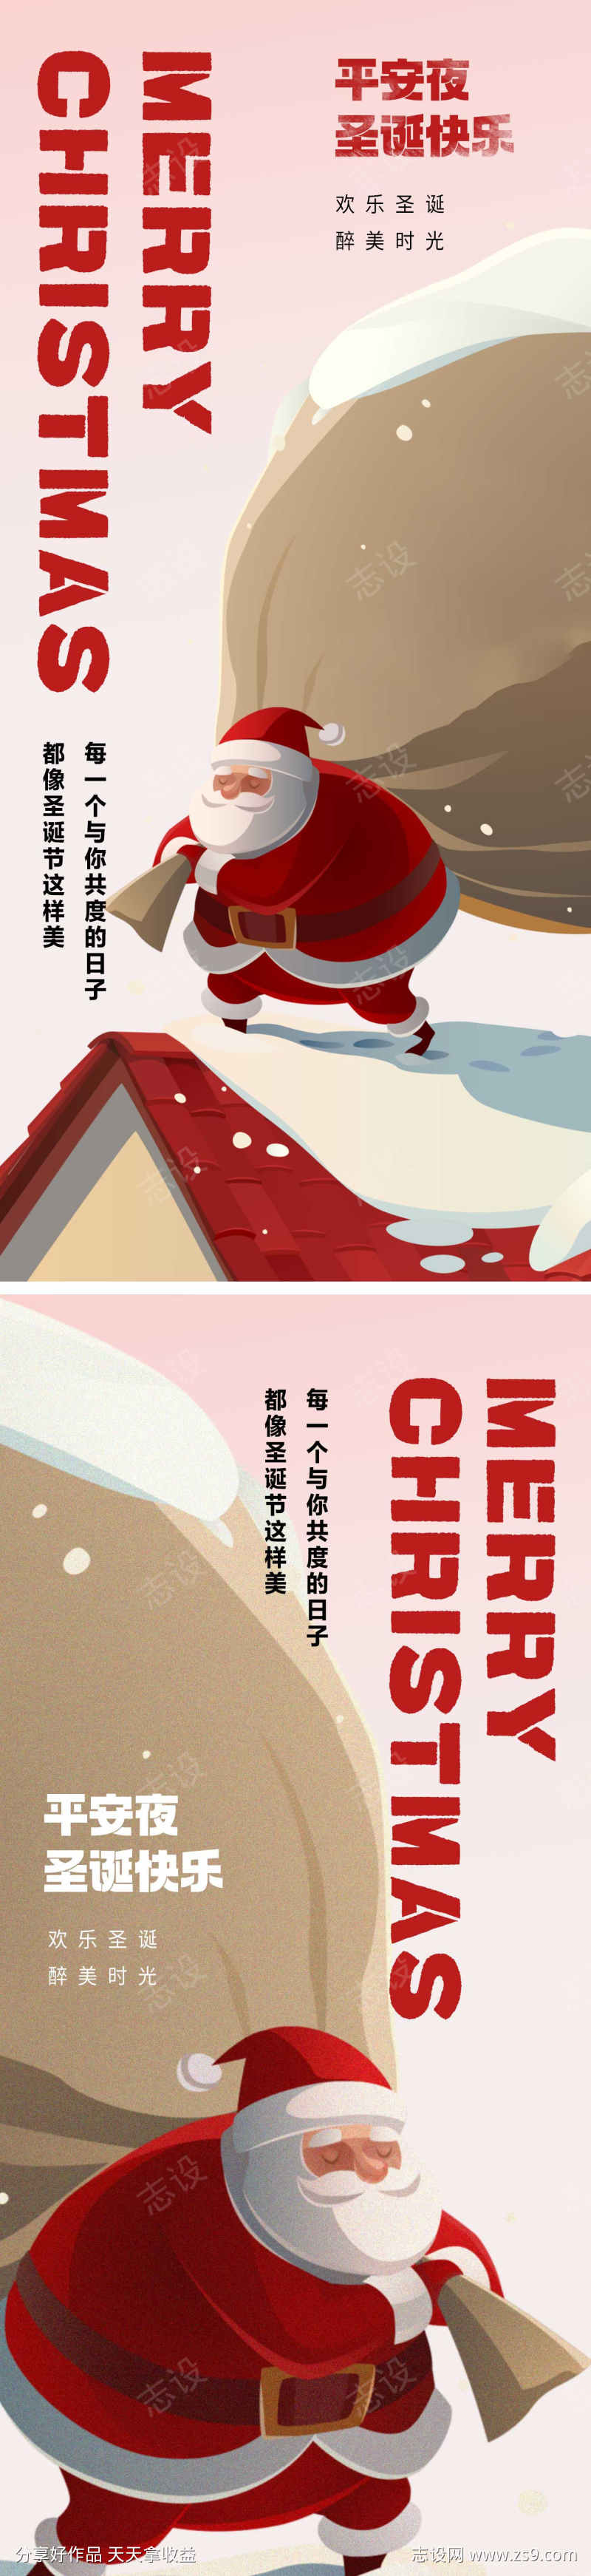 圣诞节主题海报